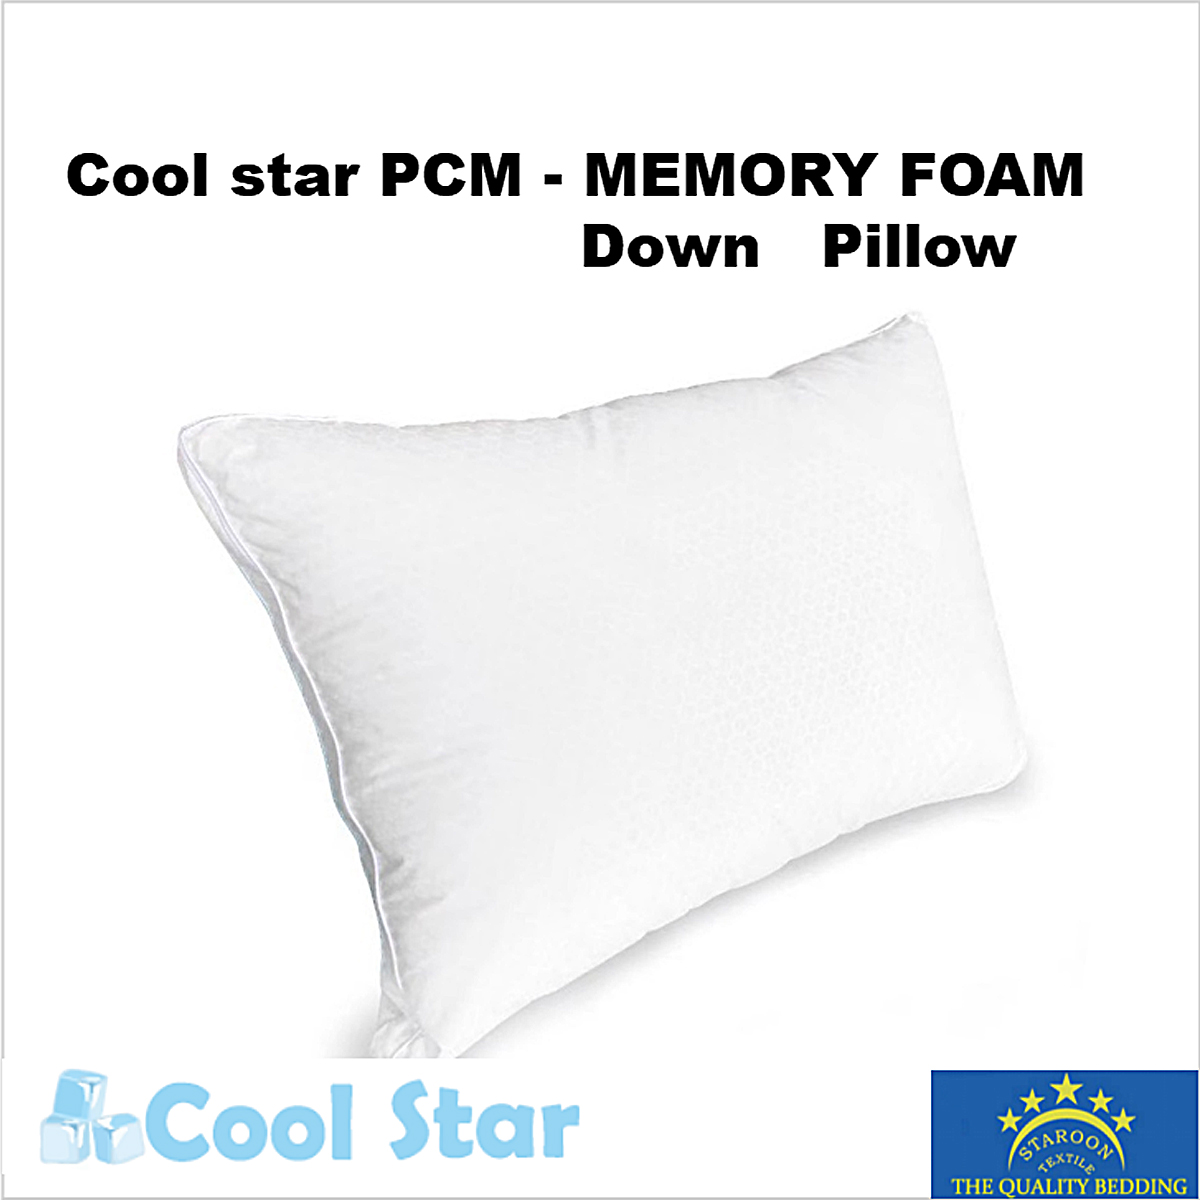 COOL STAR PCM - MEMORY FOAM & DOWN PILLOW